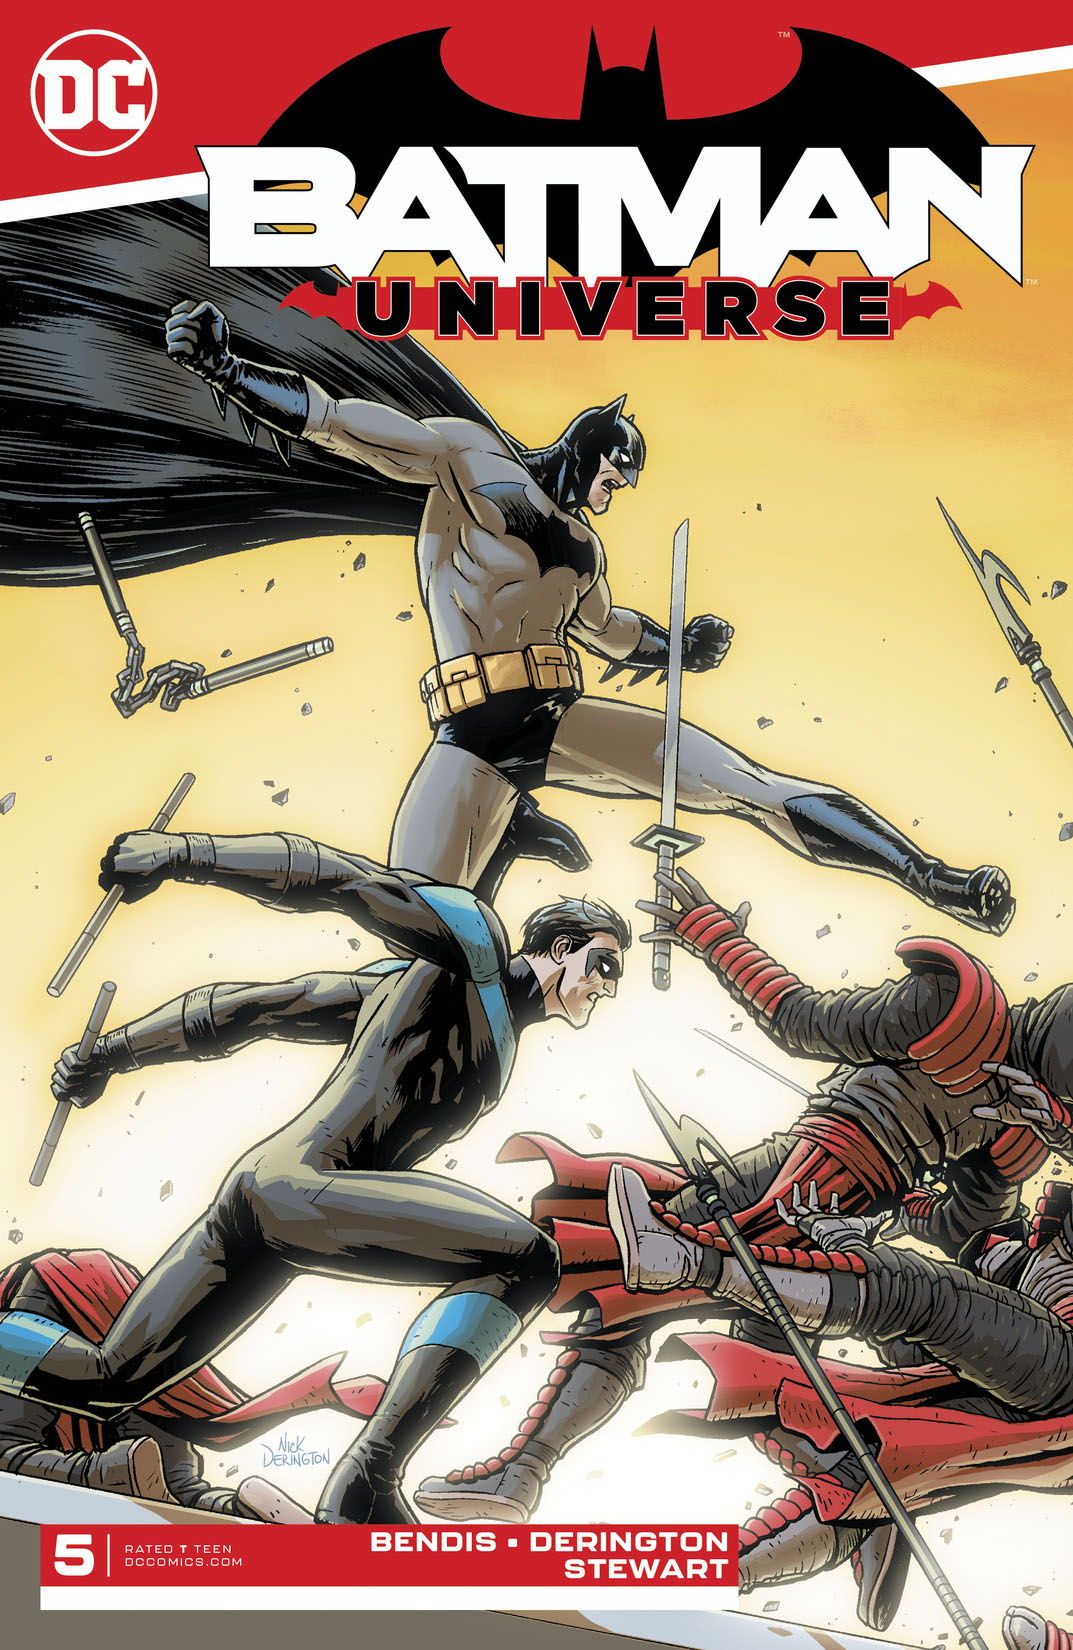 Batman: Universe #5 preview images